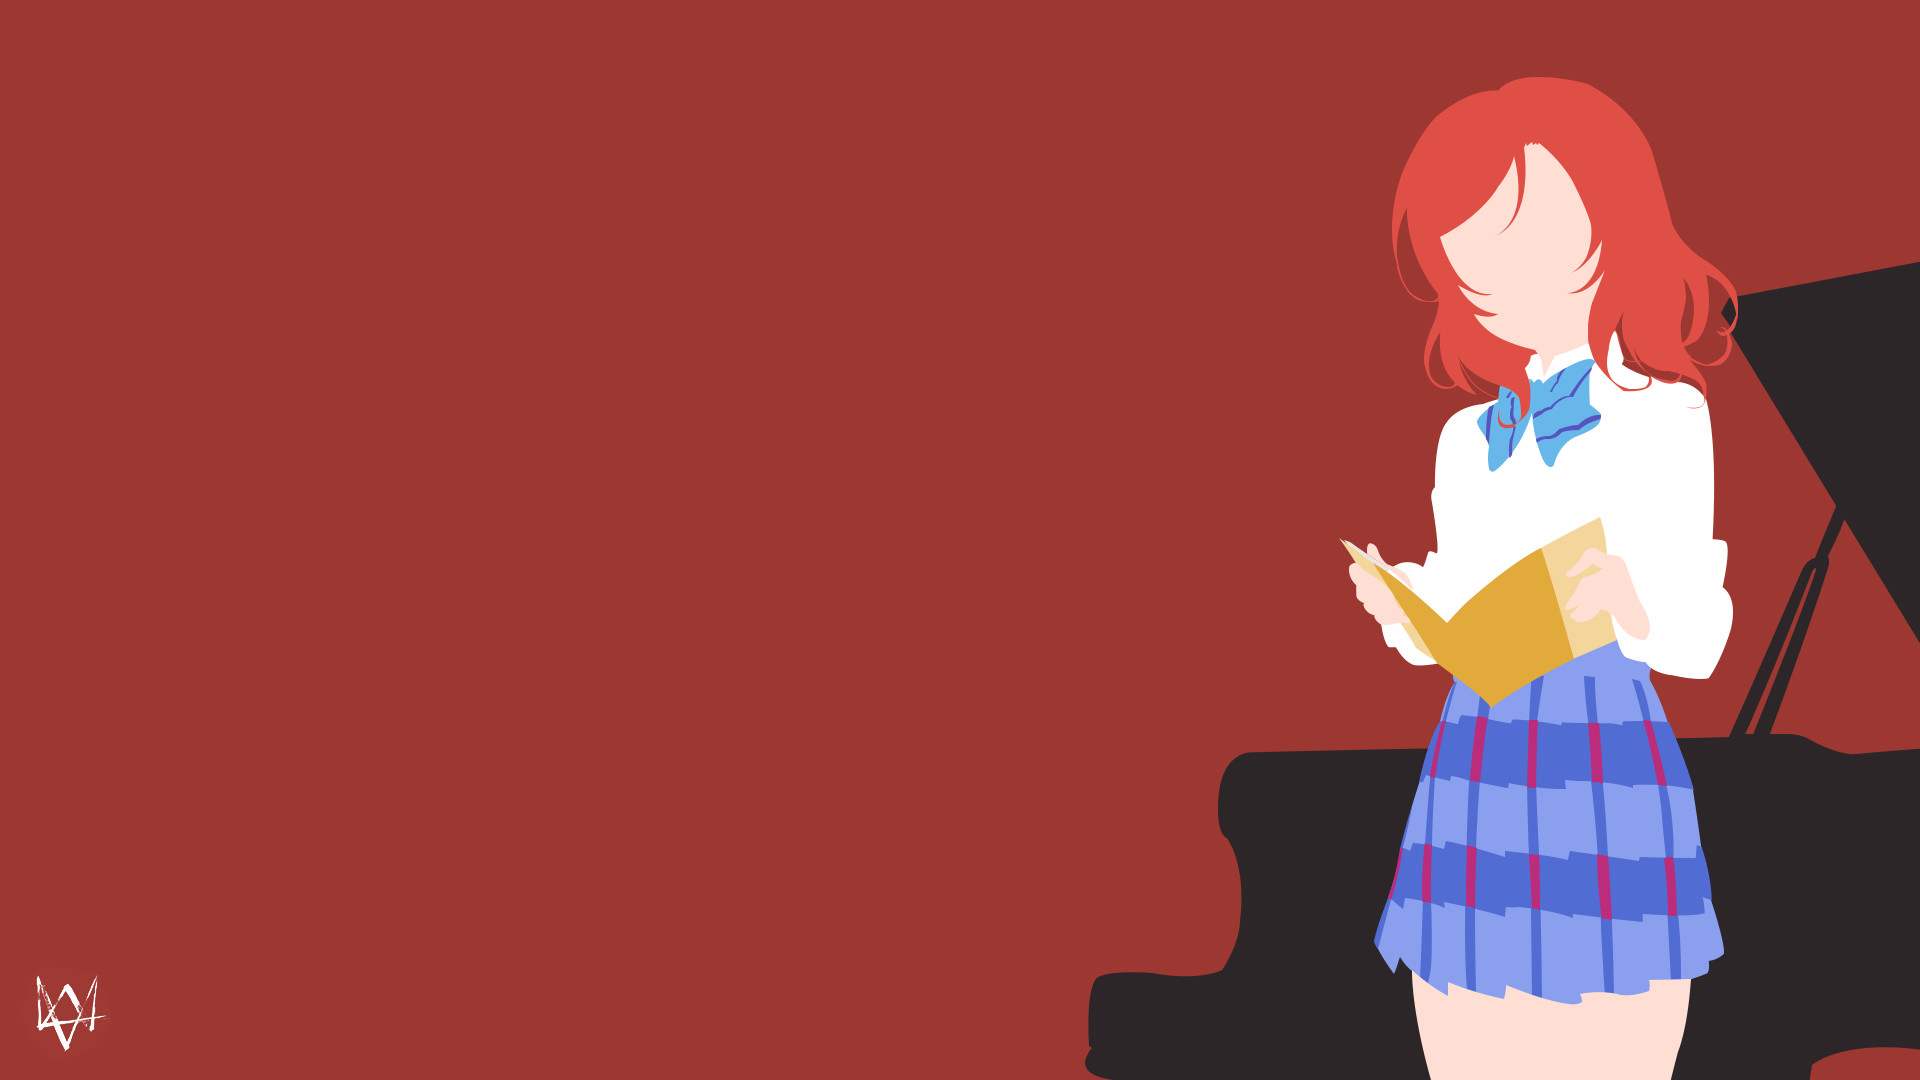 … Maki Nishikino | Love Live Minimalist Anime by Lucifer012